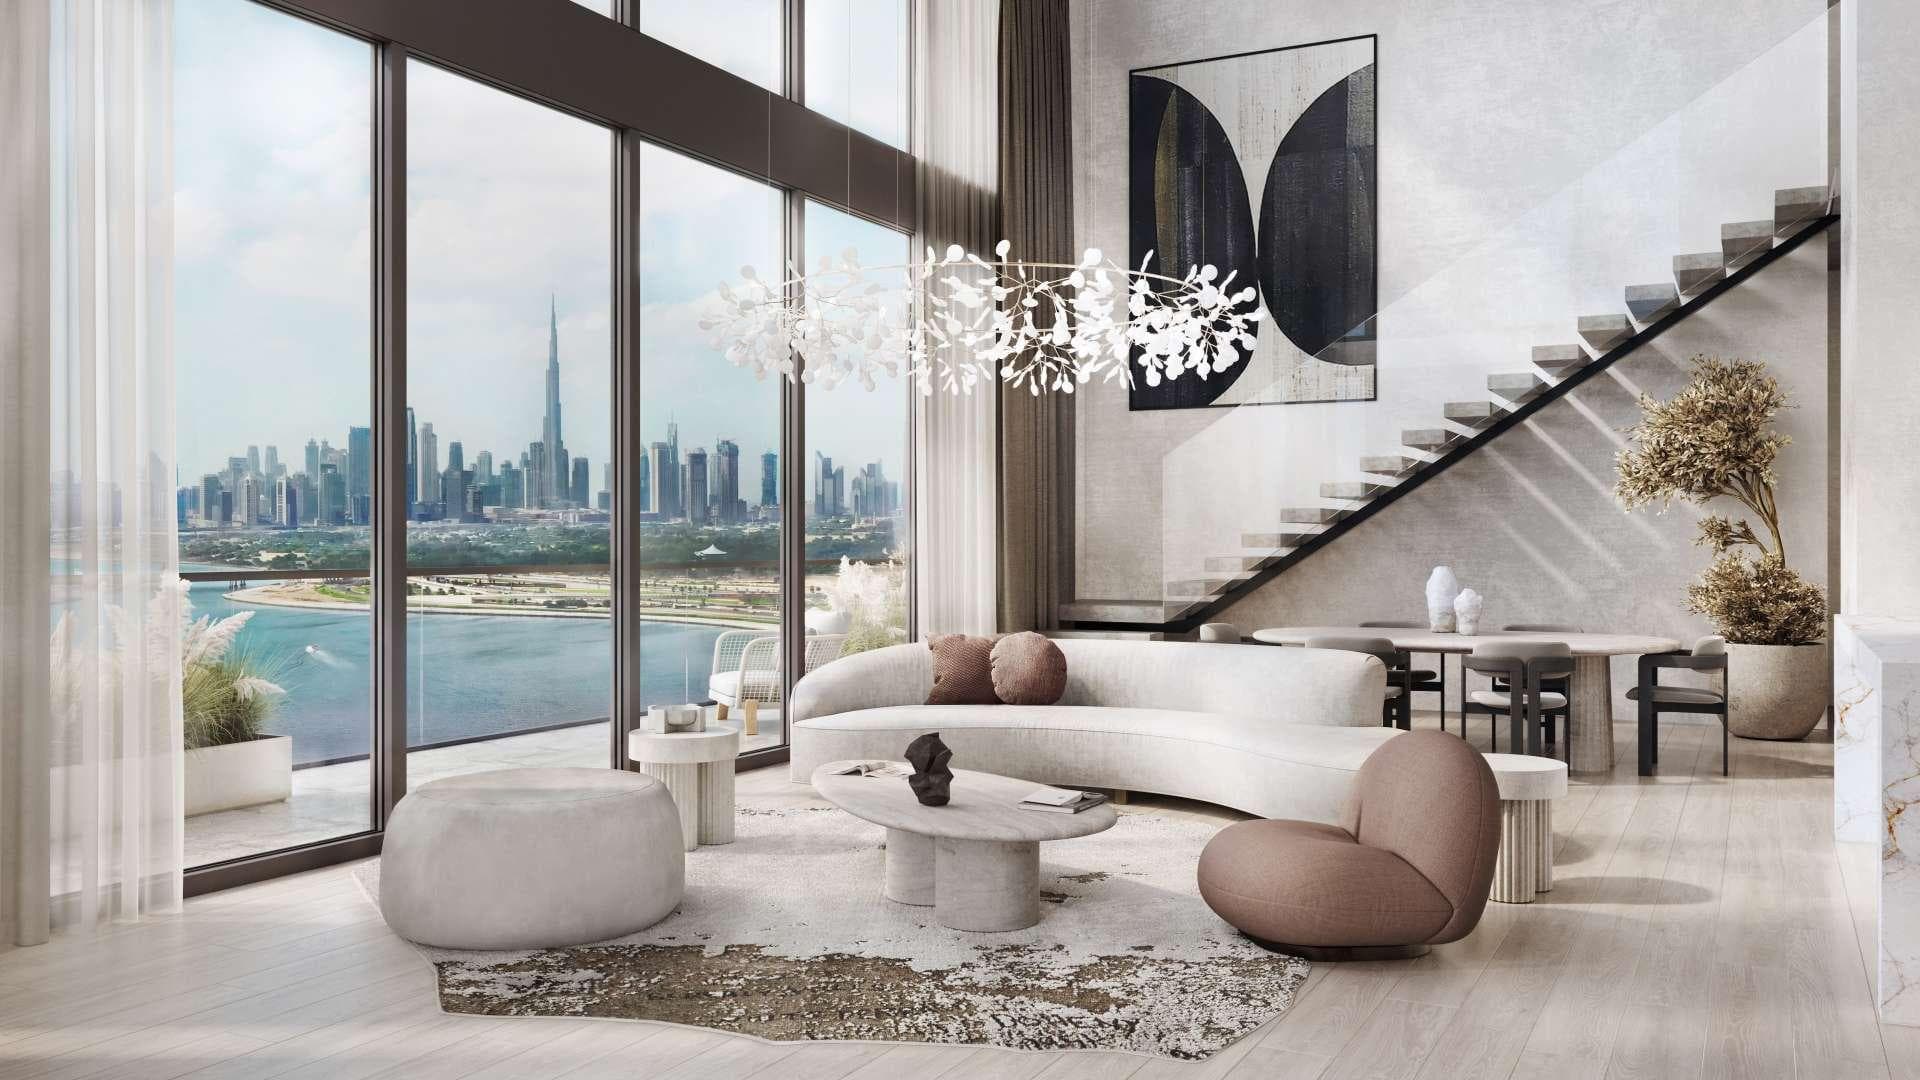 1 Bedroom Apartment For Sale Kempinski Residences The Creek Dubai Lp15626 9b8e10598238980.jpg